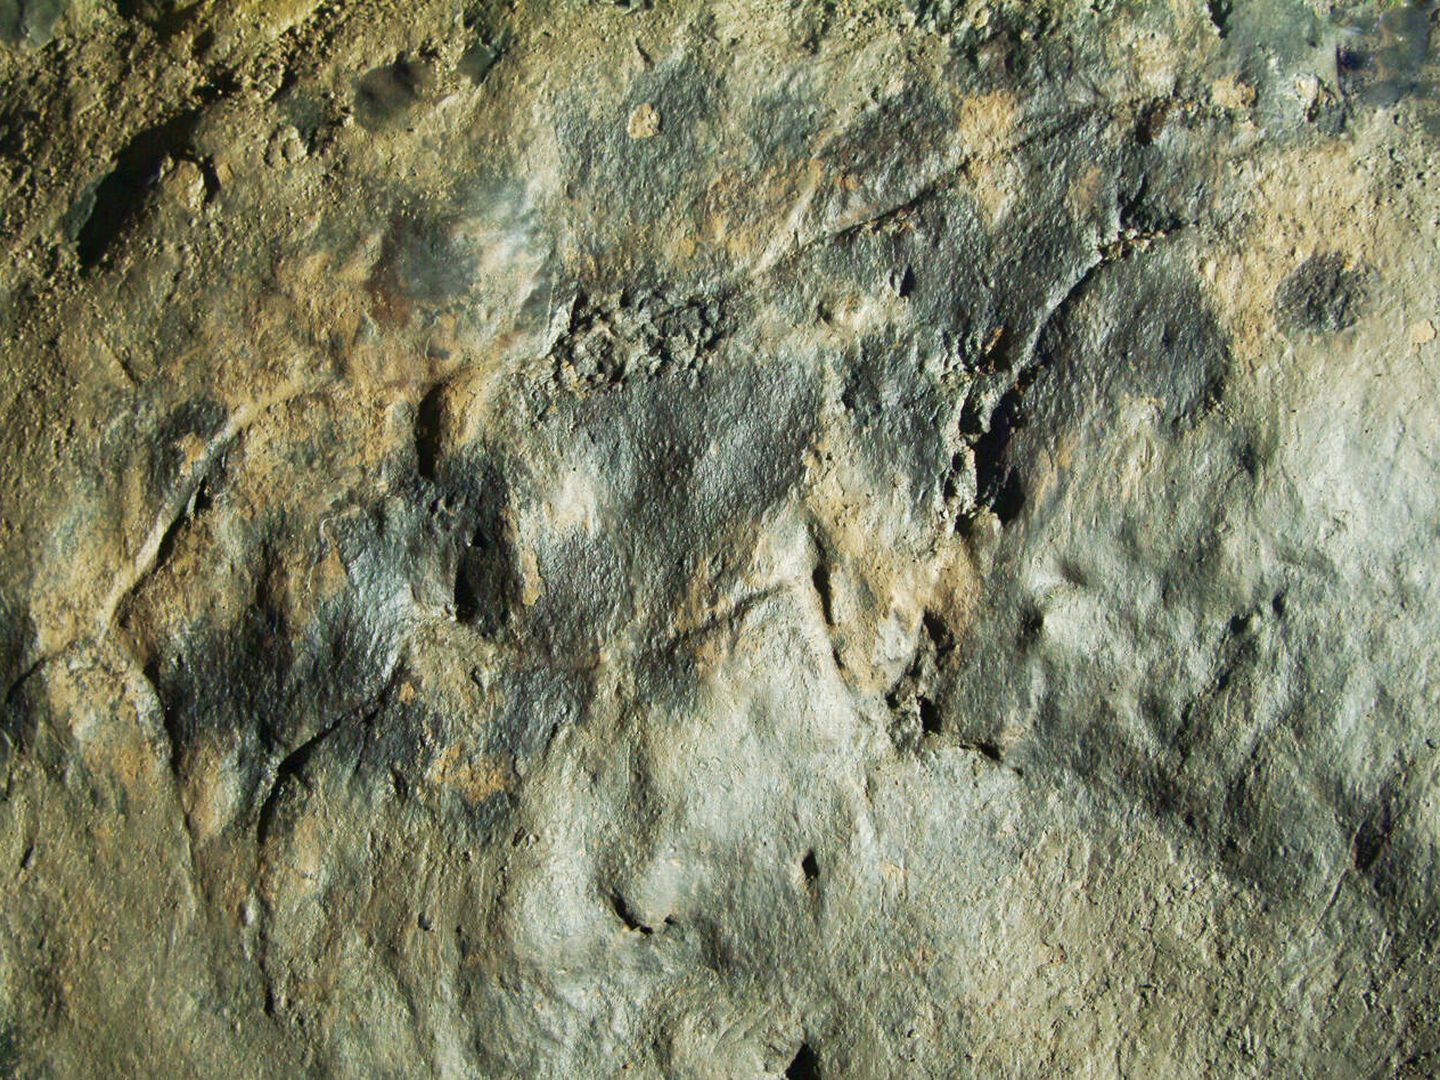 Caballo paleolítico grabado en el suelo. (Cedida)